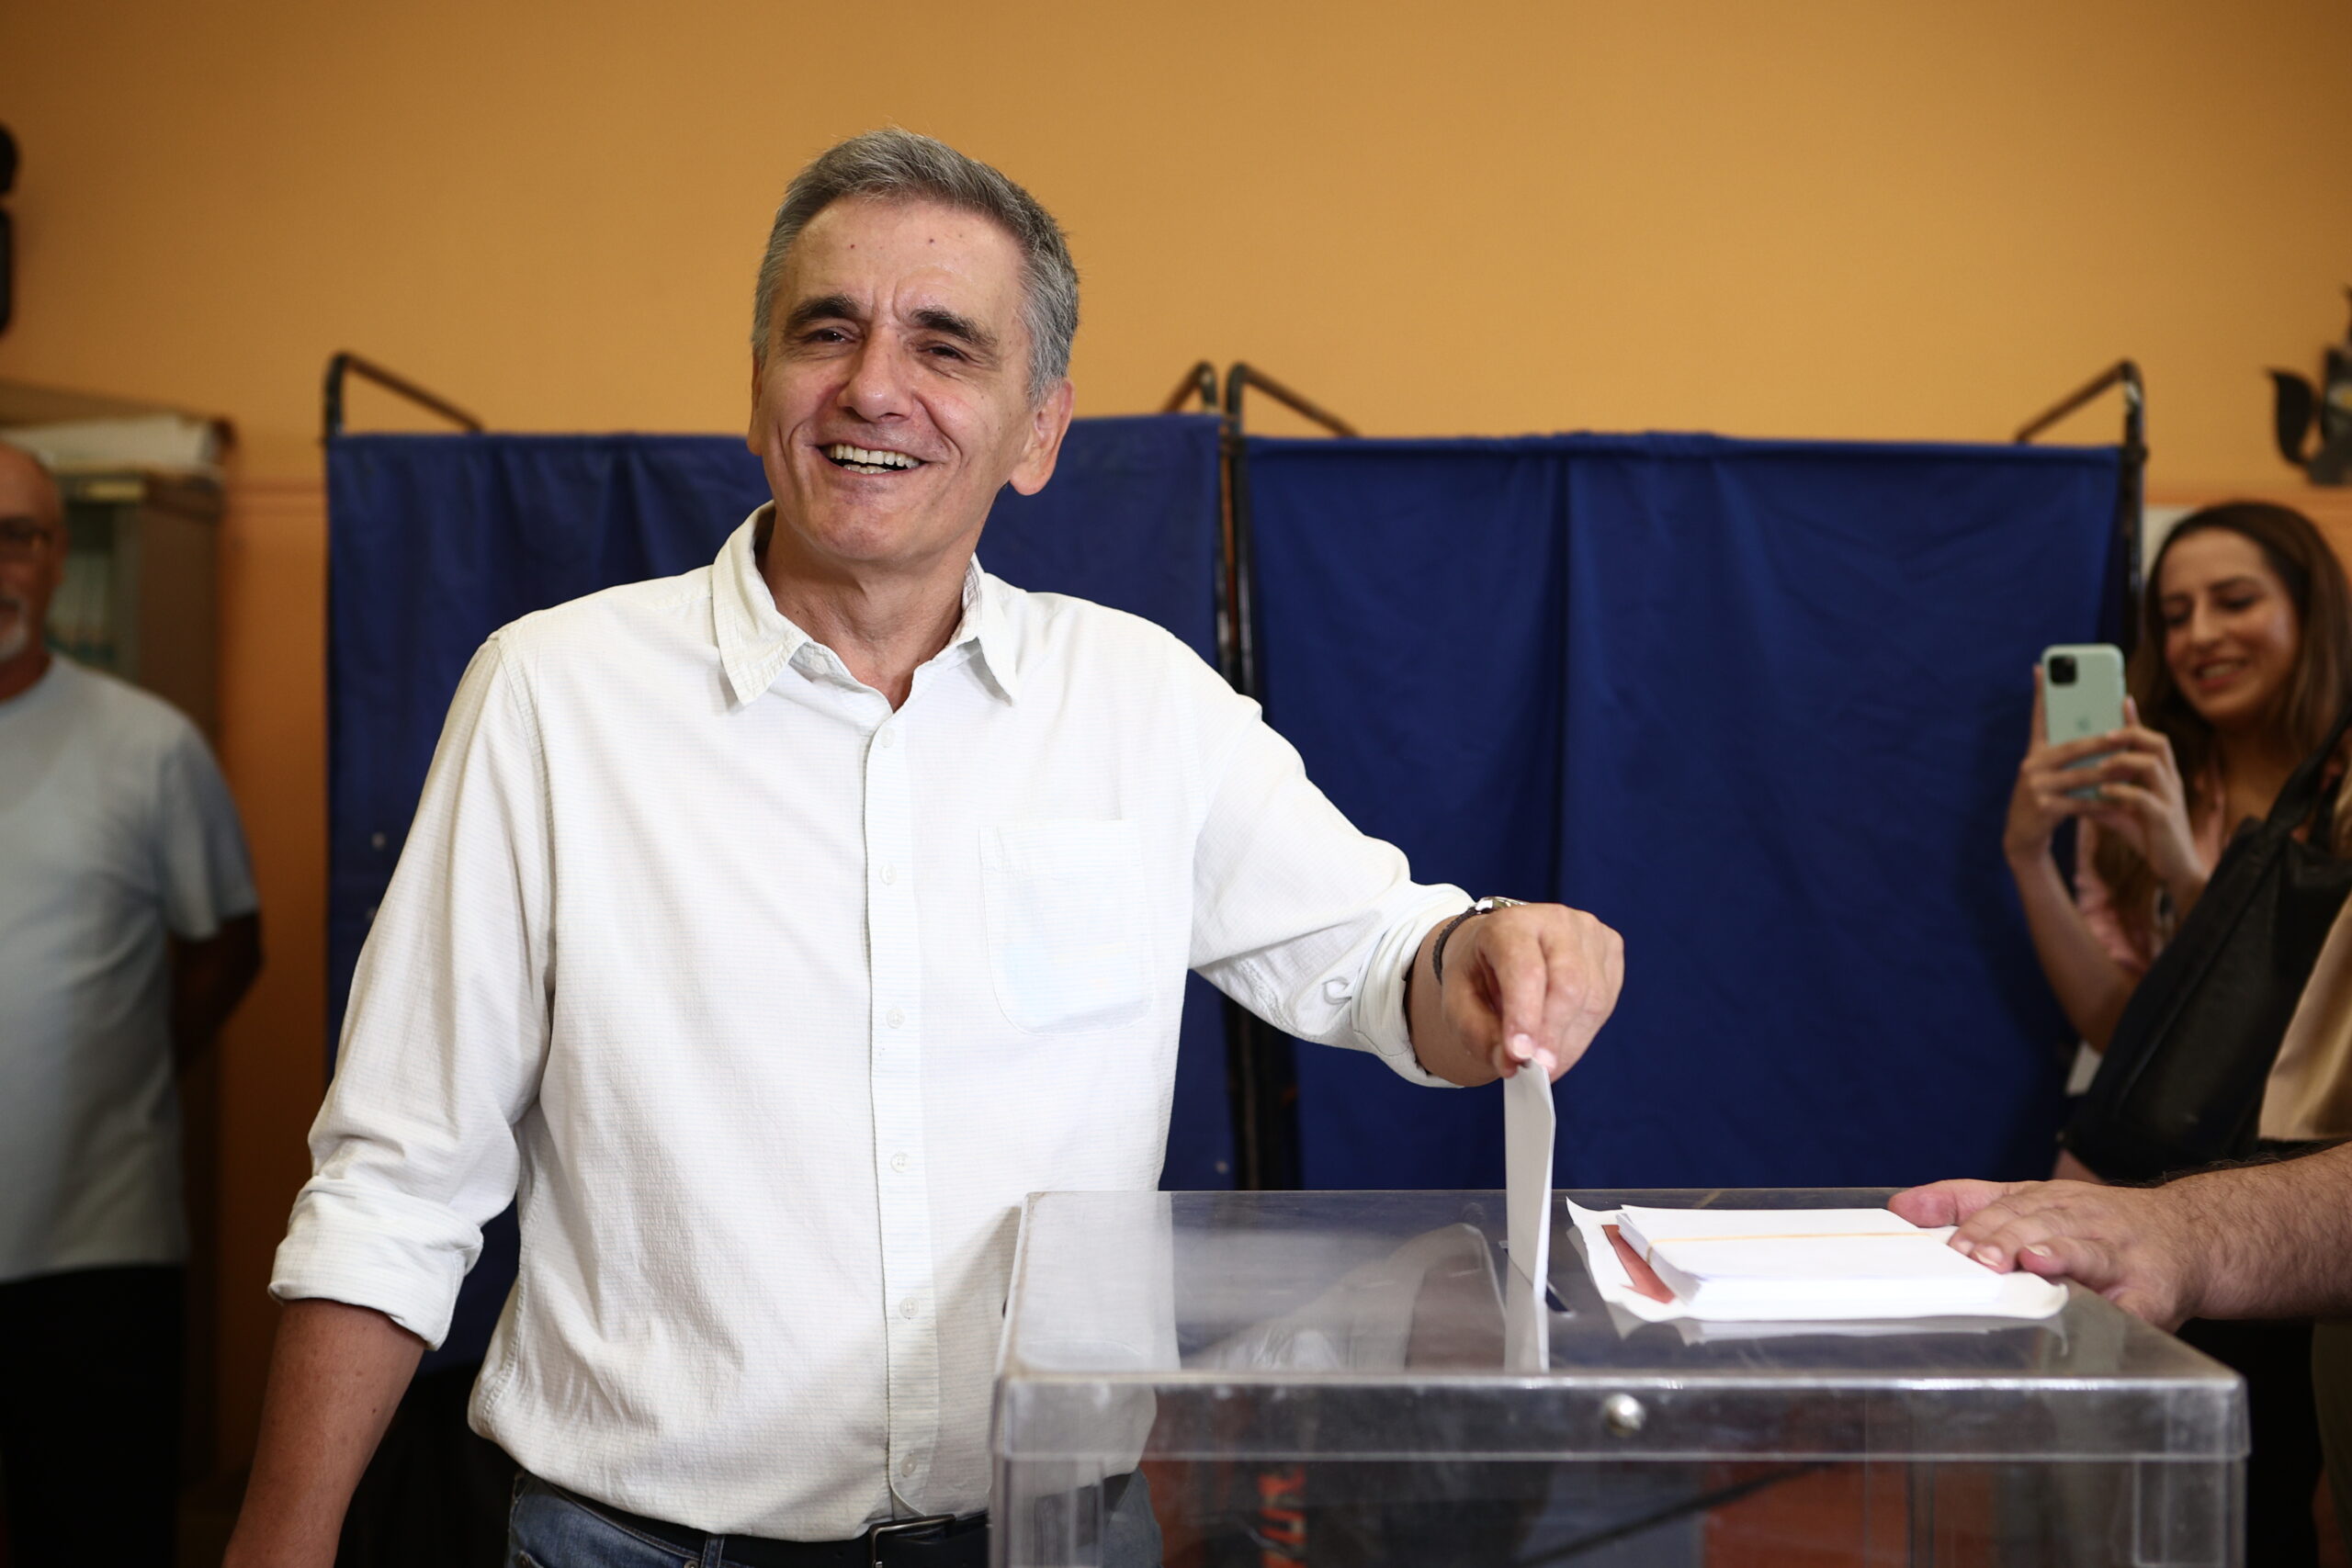 Εκλογές ΣΥΡΙΖΑ: O Ευκλείδης Τσακαλώτος ψήφισε στη Νέα Ιωνία – Σημαντική μέρα για τον ΣΥΡΙΖΑ, την κοινωνία, τον κόσμο της Αριστεράς